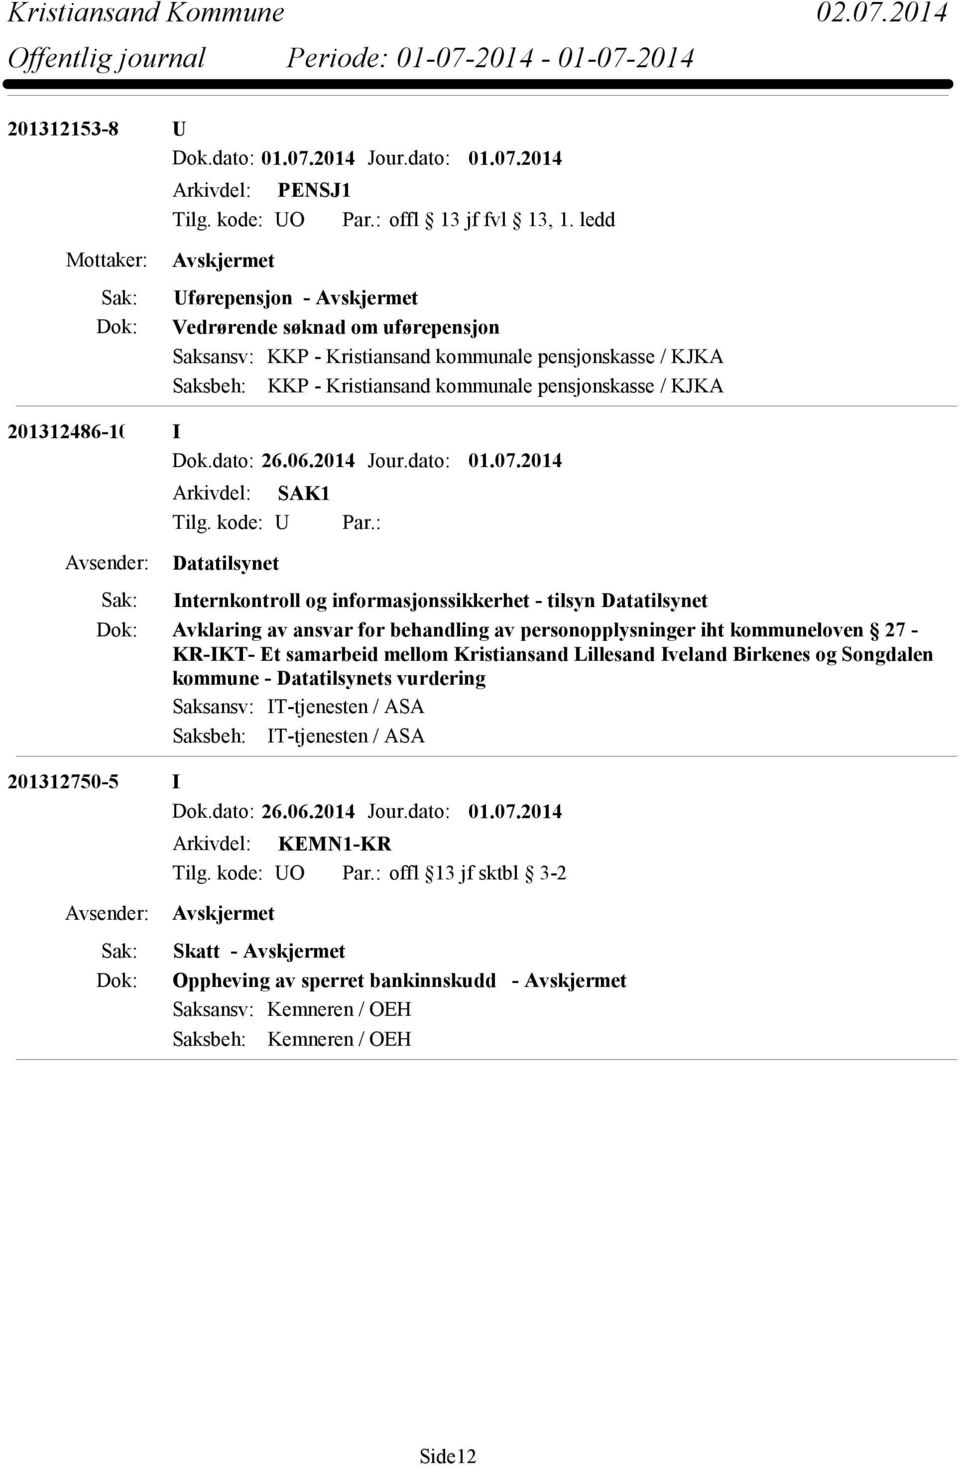 : Datatilsynet Internkontroll og informasjonssikkerhet - tilsyn Datatilsynet Avklaring av ansvar for behandling av personopplysninger iht kommuneloven 27 - KR-IKT- Et samarbeid mellom Kristiansand